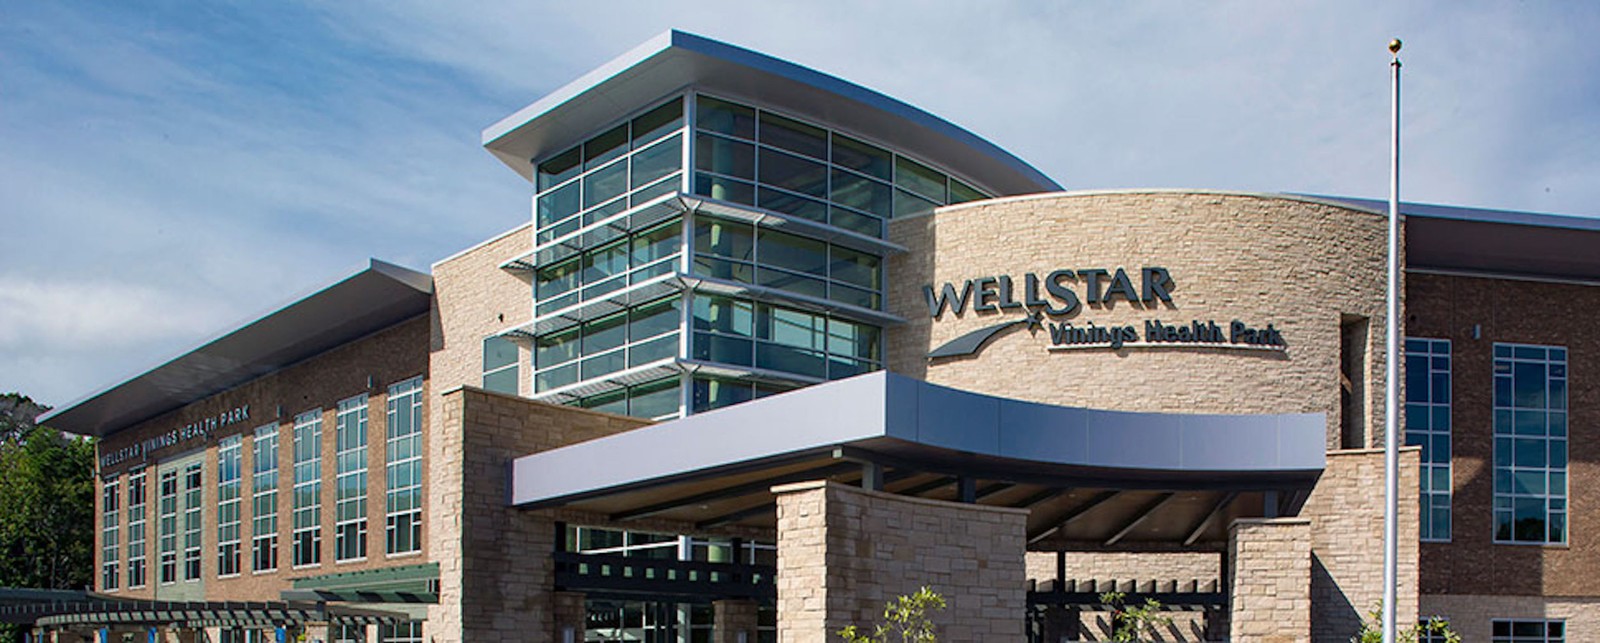 Wellstar Health Systems